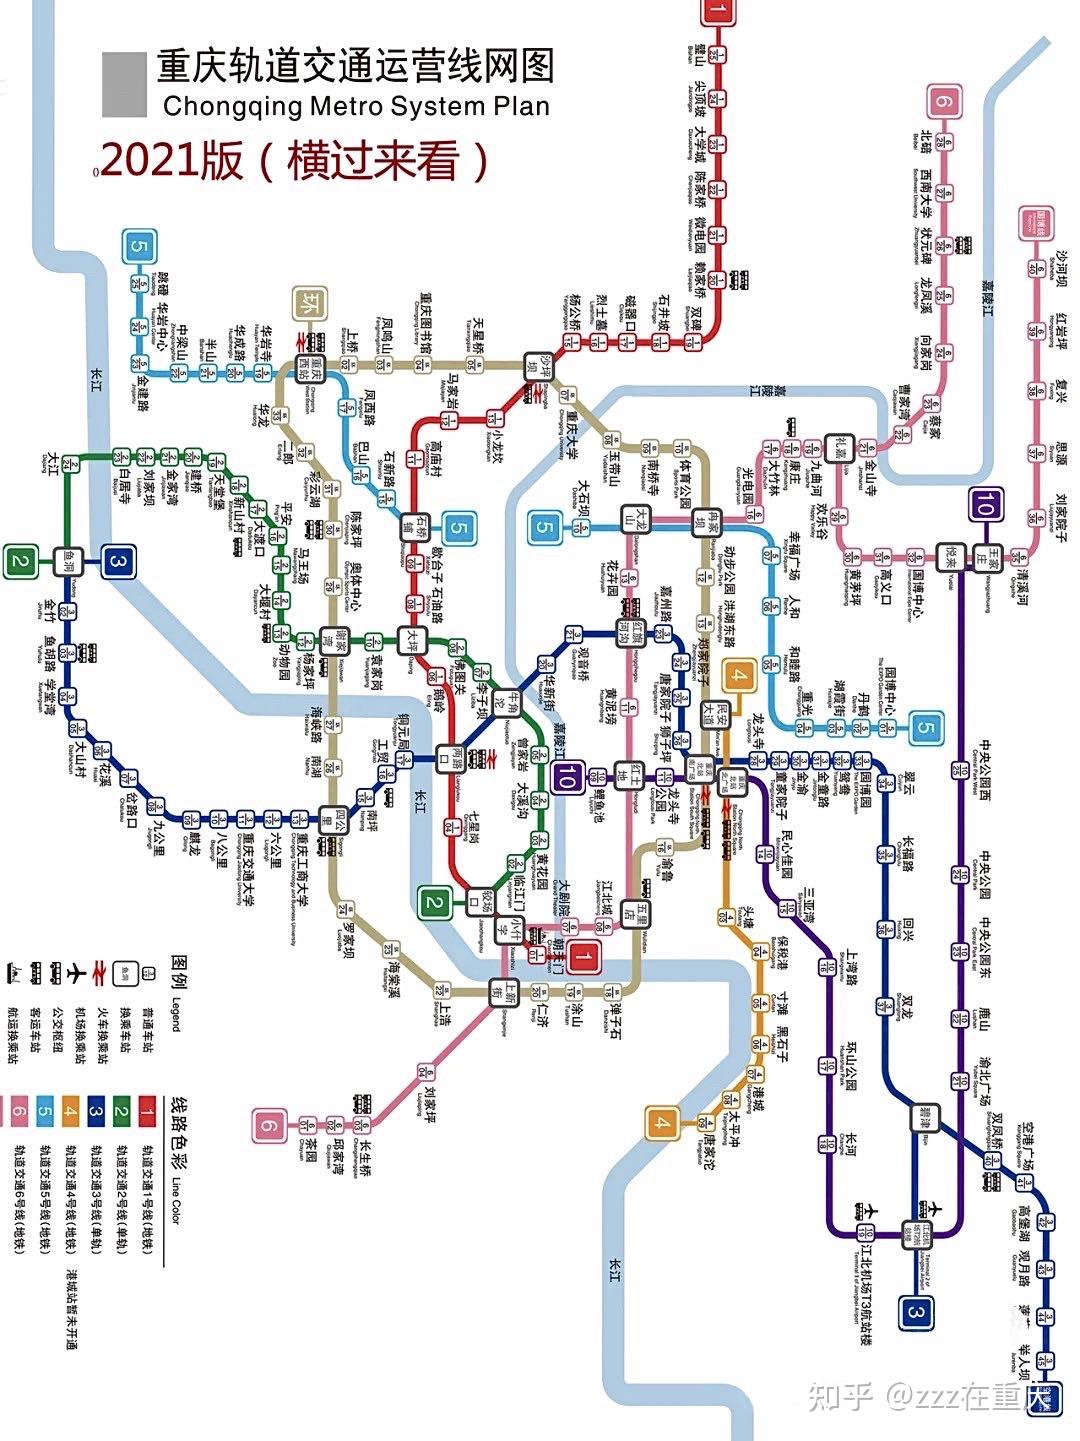 重庆旅游9215史上最全轻轨线路图7515良心总结 知乎